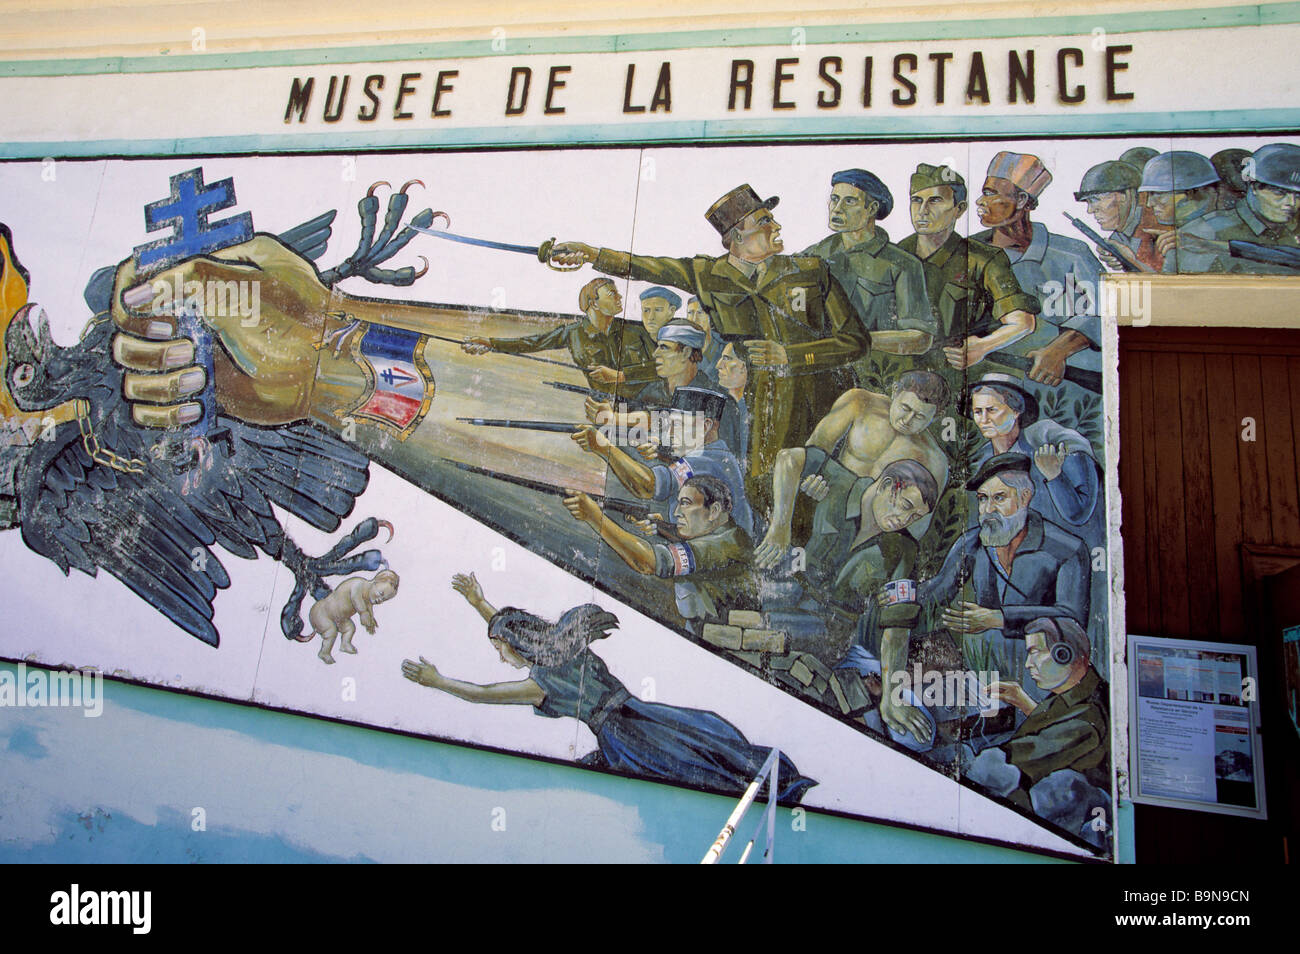 France, Drome, Vercors, Vassieux en Vercors, Musee de Resistance Stock Photo